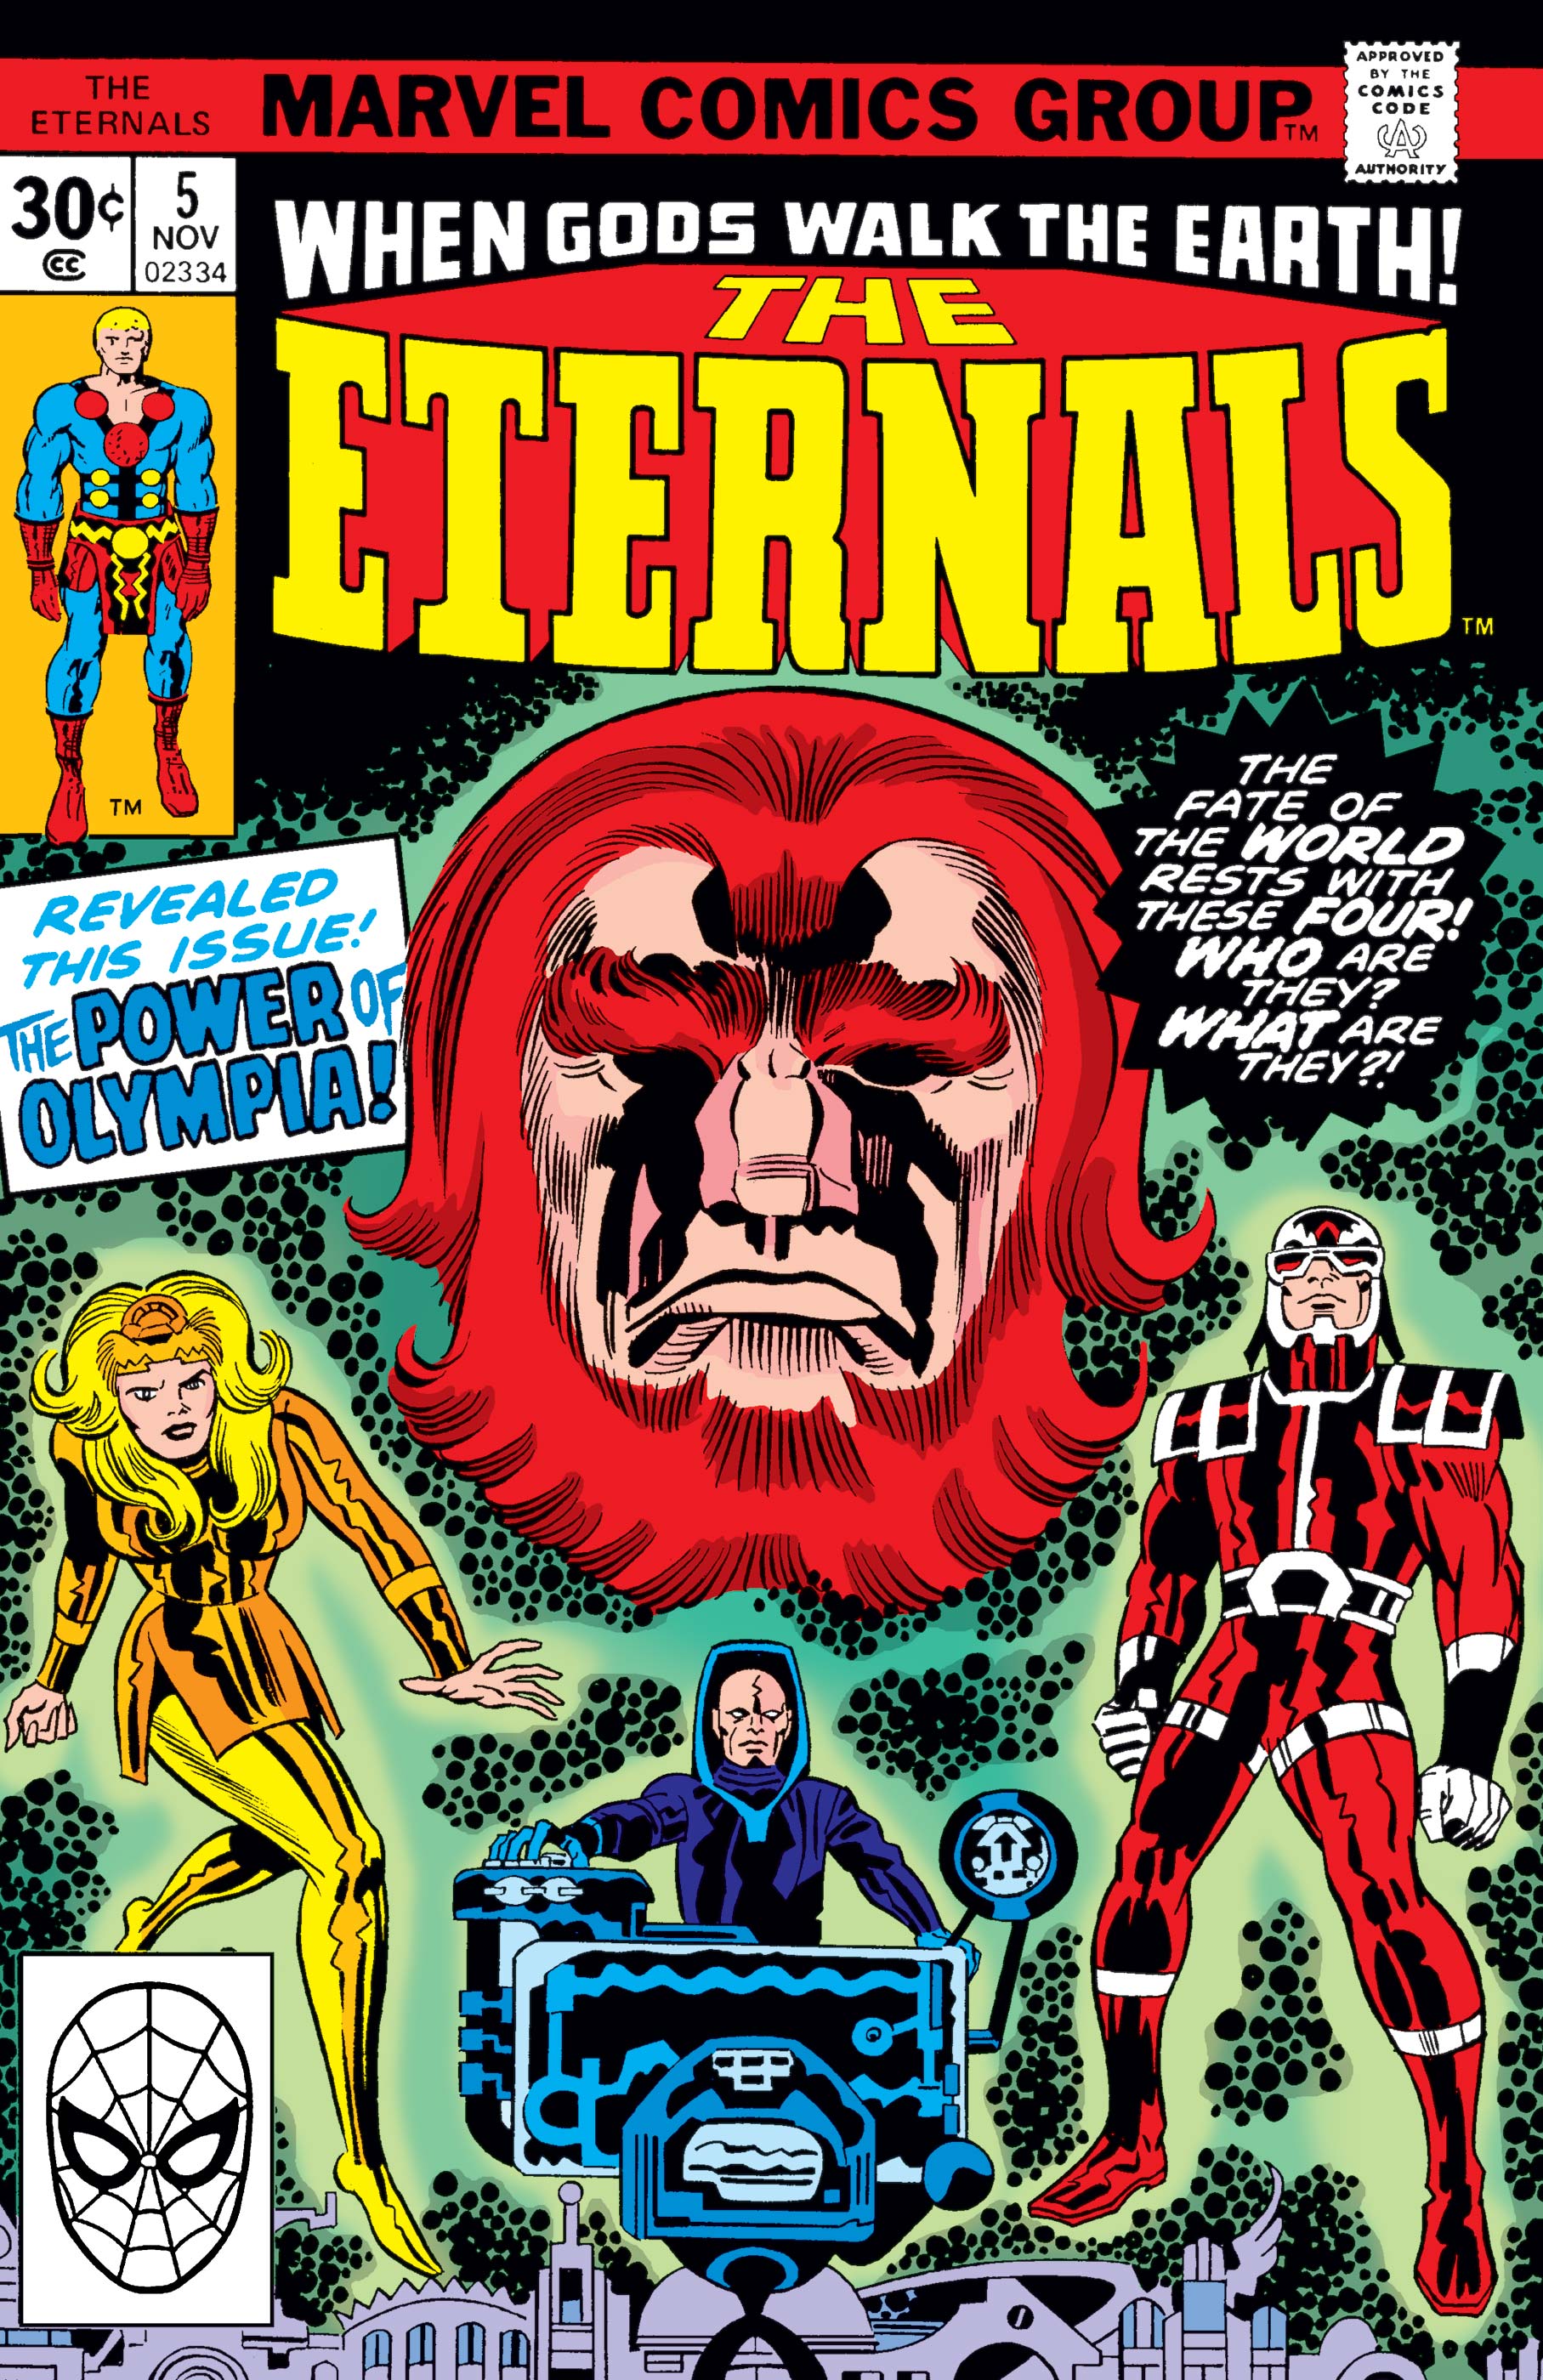 Eternals (1976) #5